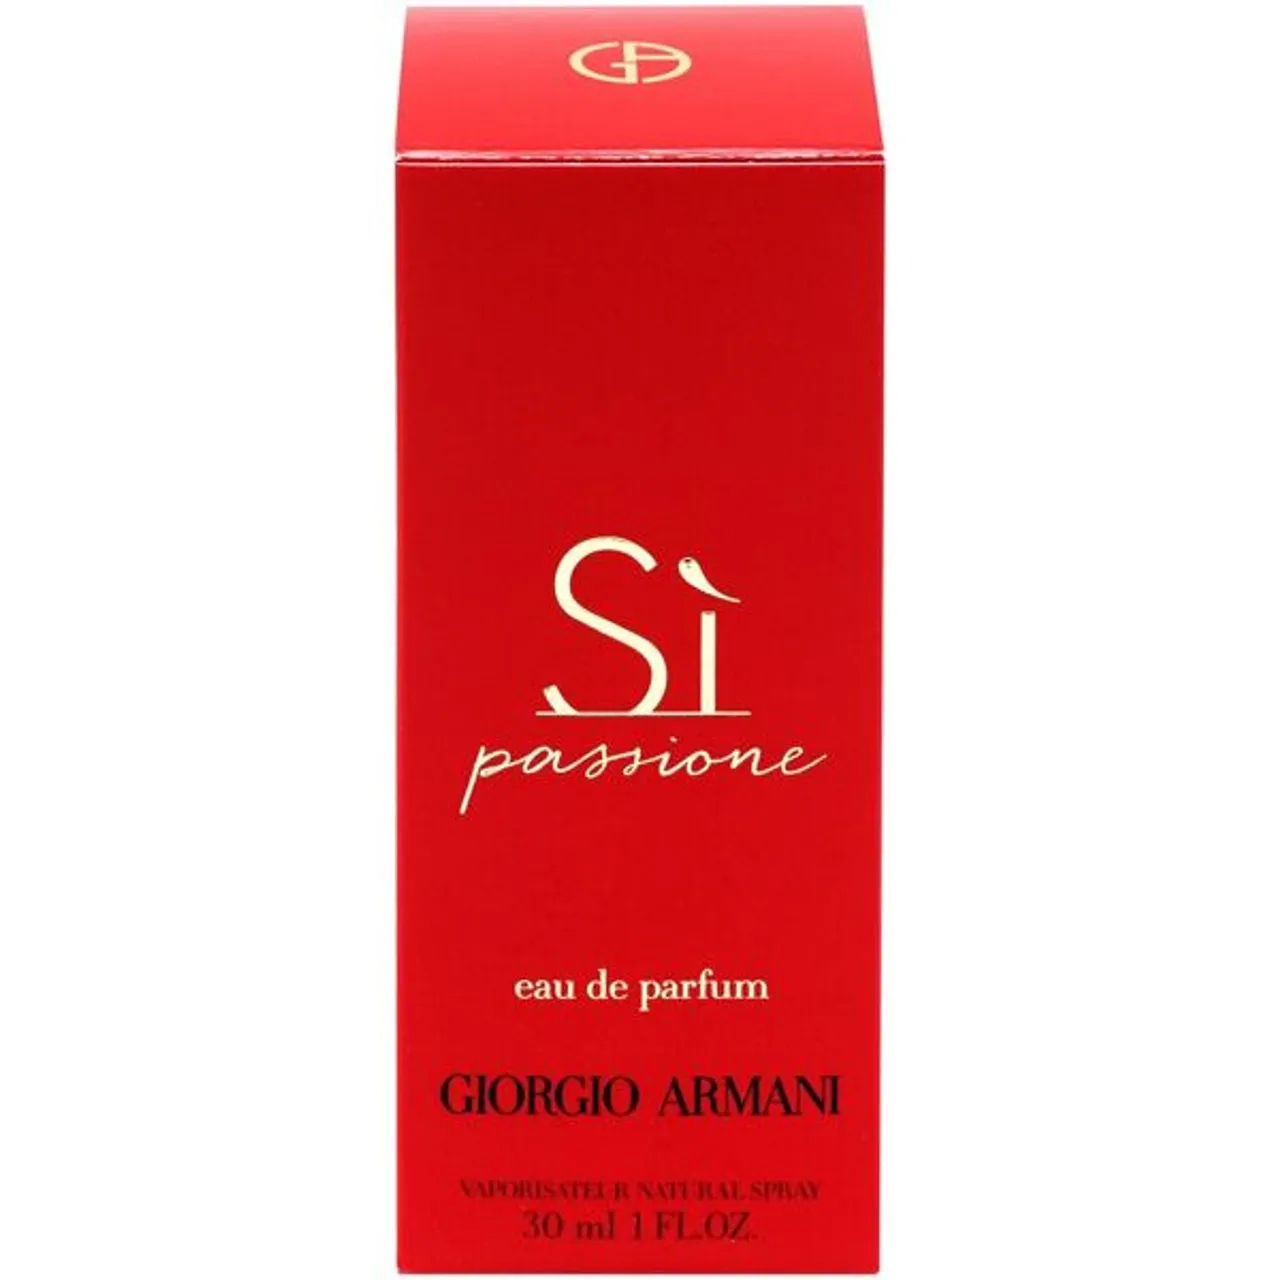 Eau de Parfum GIORGIO ARMANI "Si Passione" Parfüms Gr. 30 ml, rot Damen Eau de Parfum